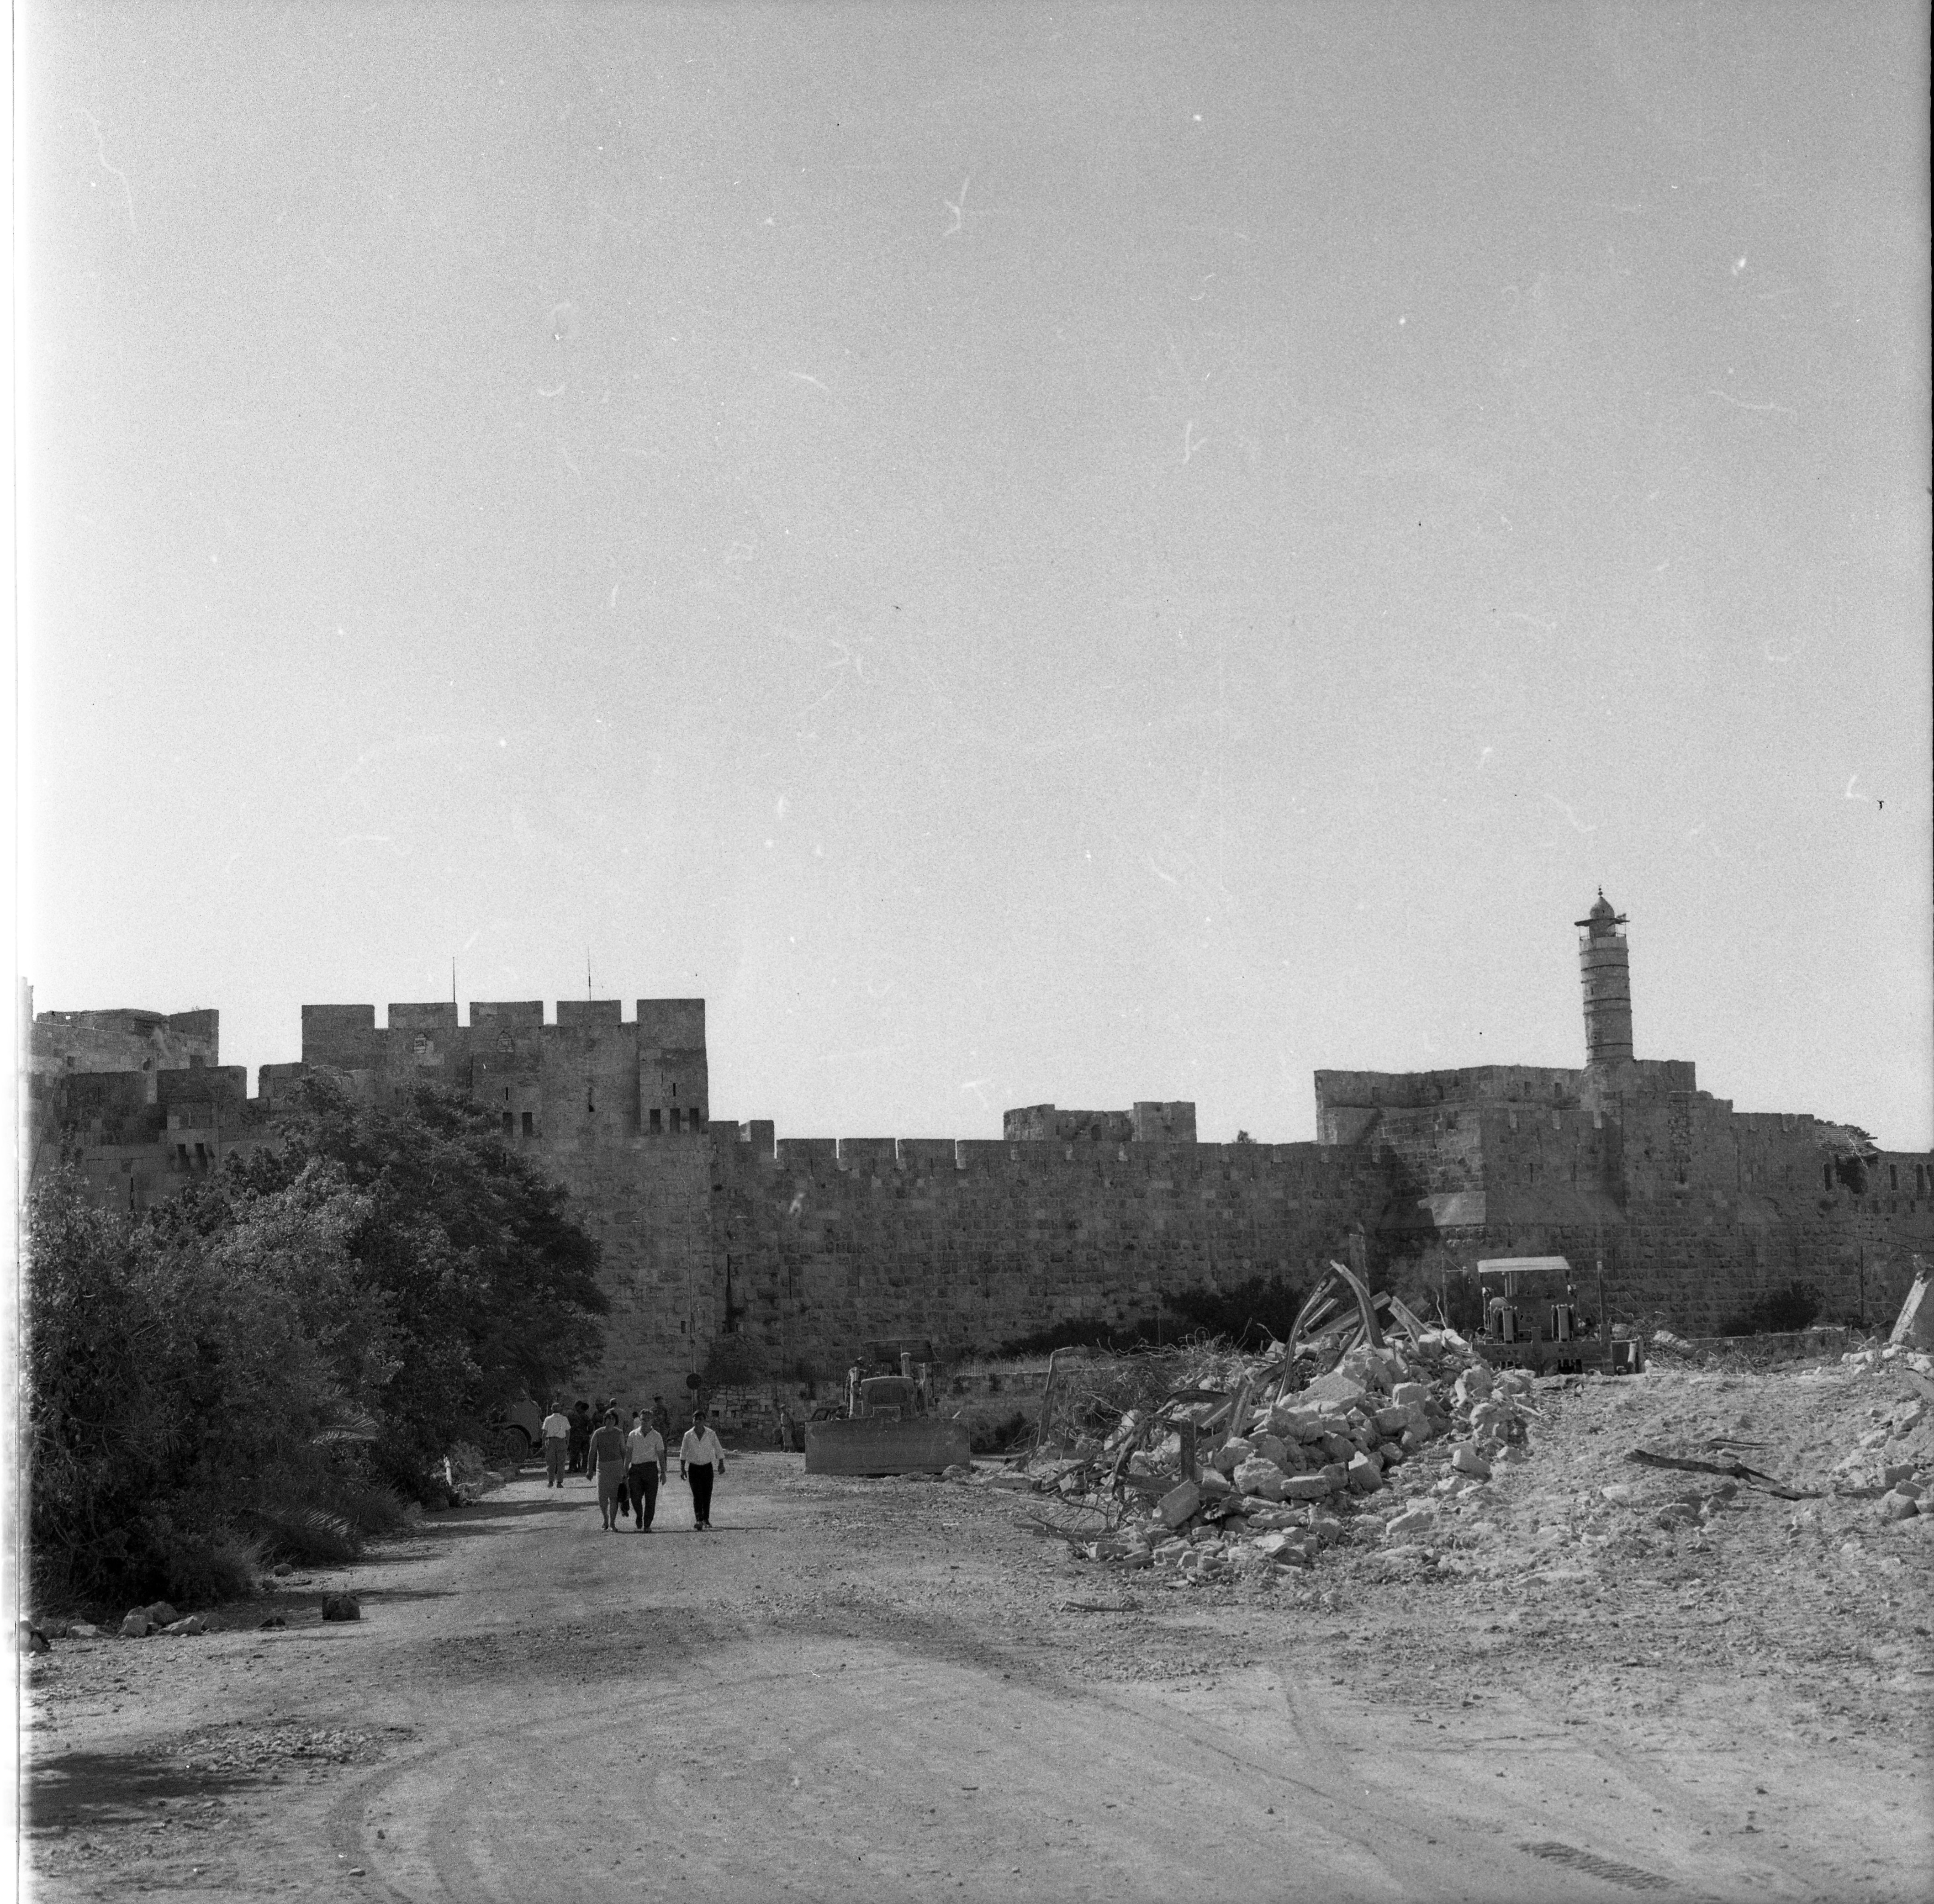  ירושלים ; 1968